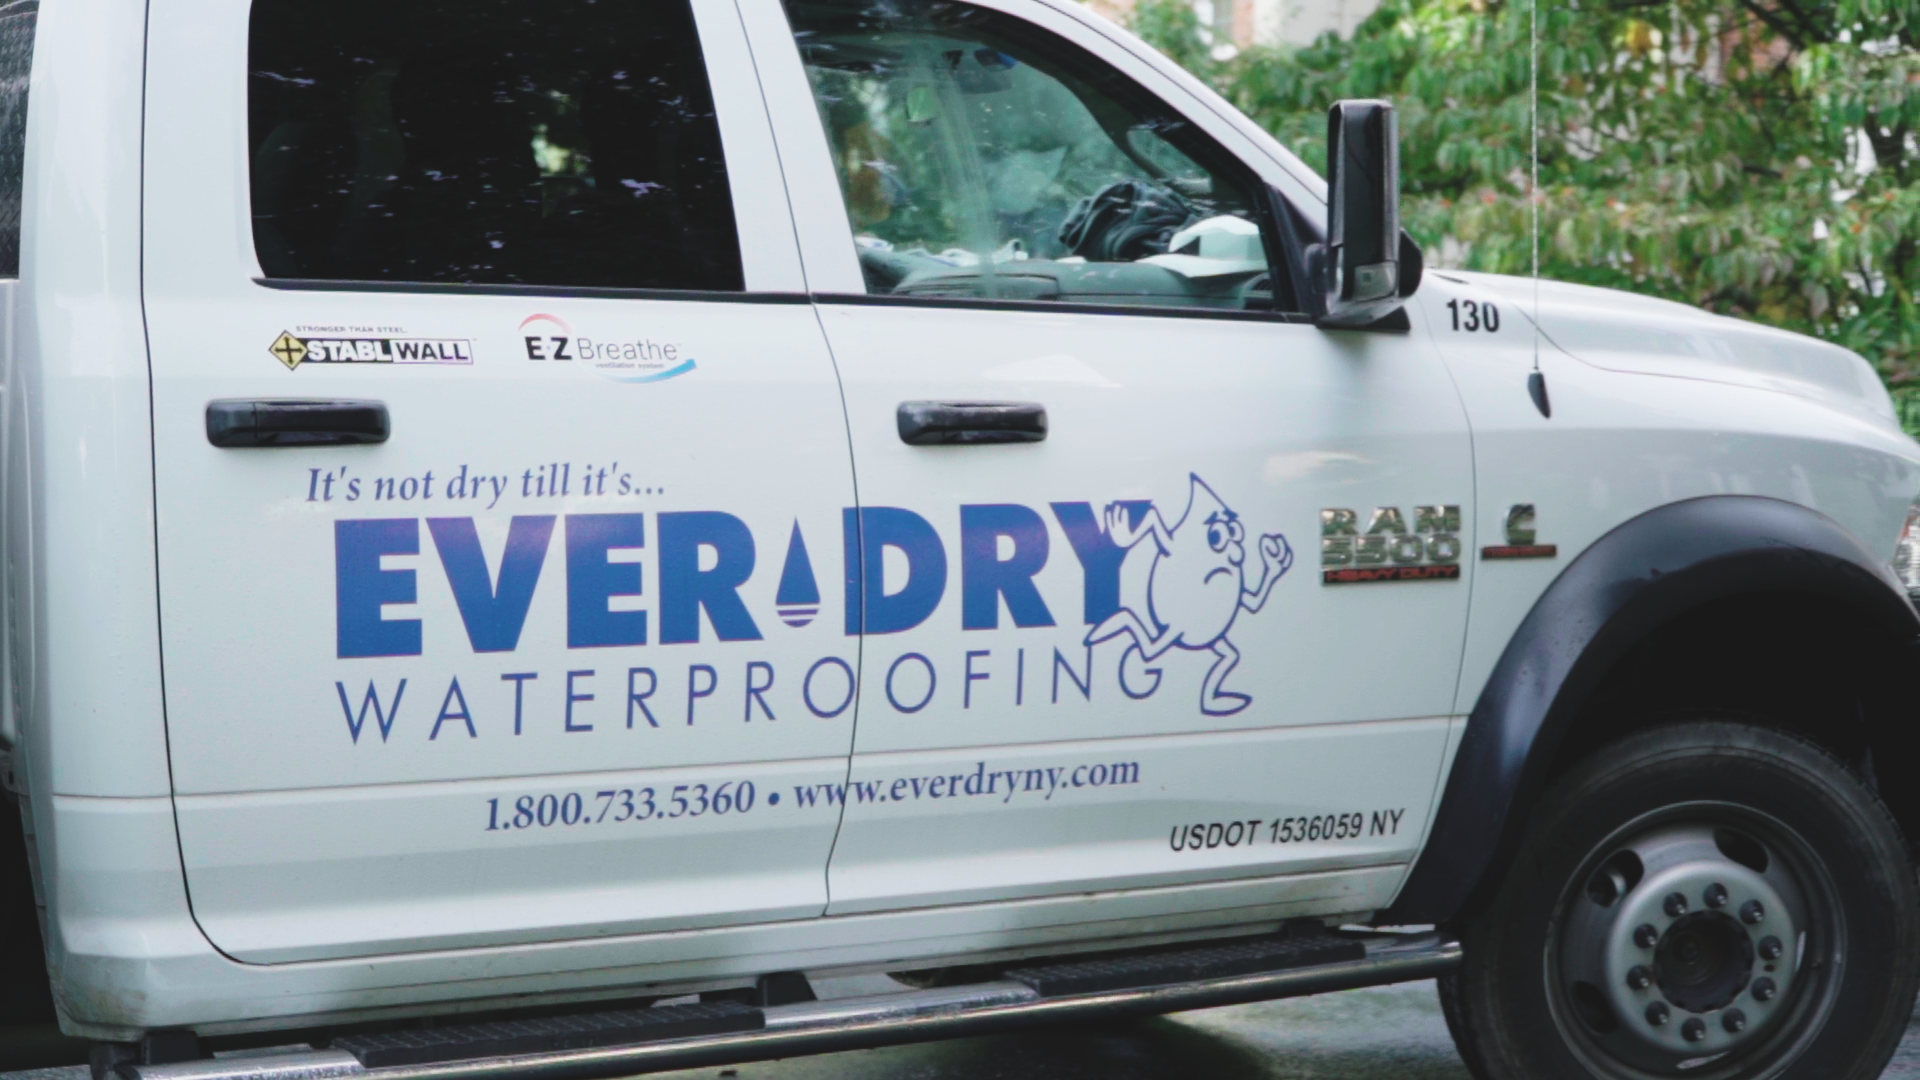 Everdry Waterproofing Photo